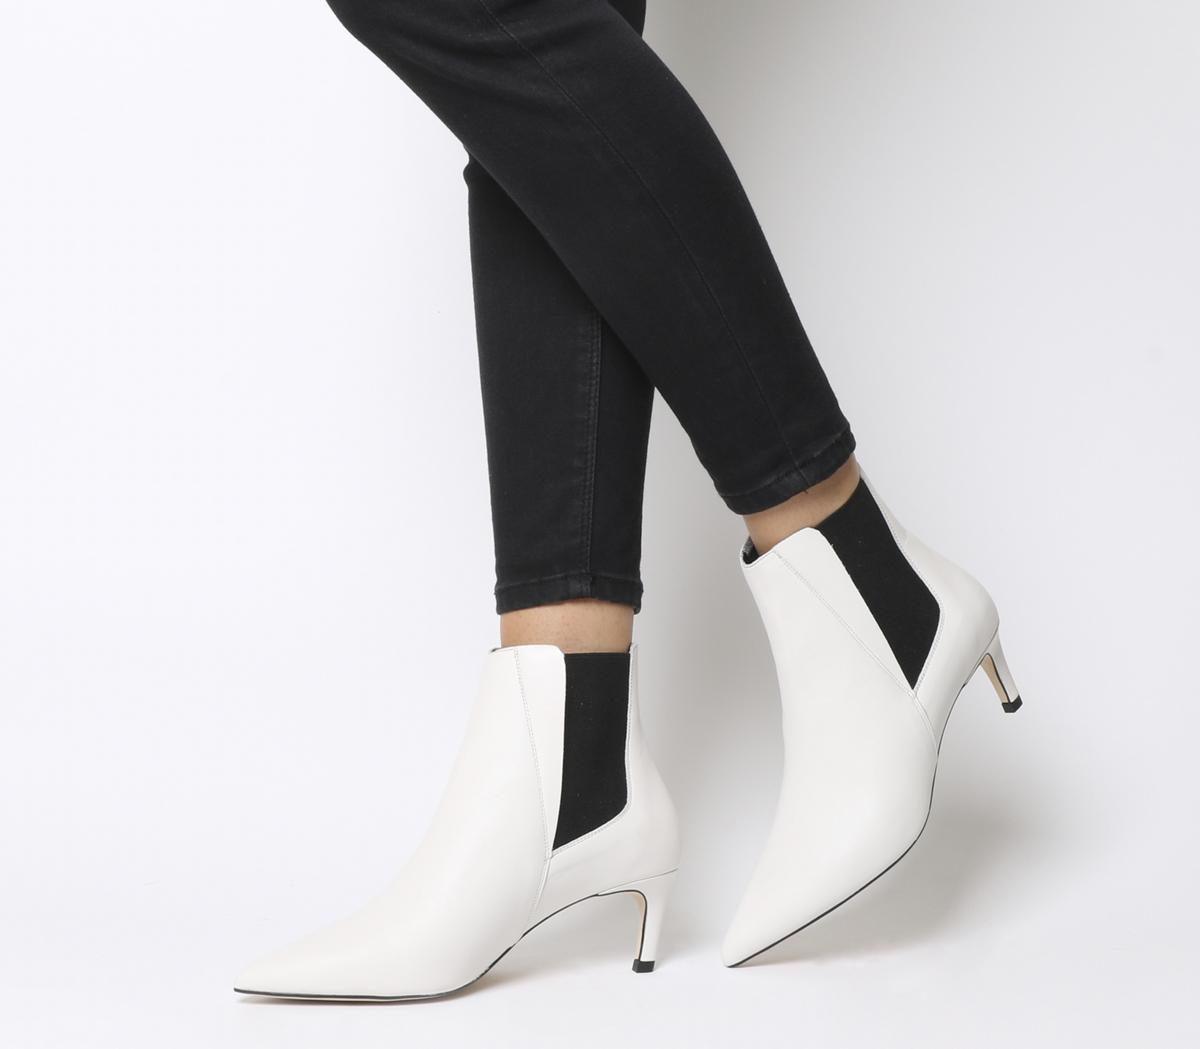 white leather kitten heel booties